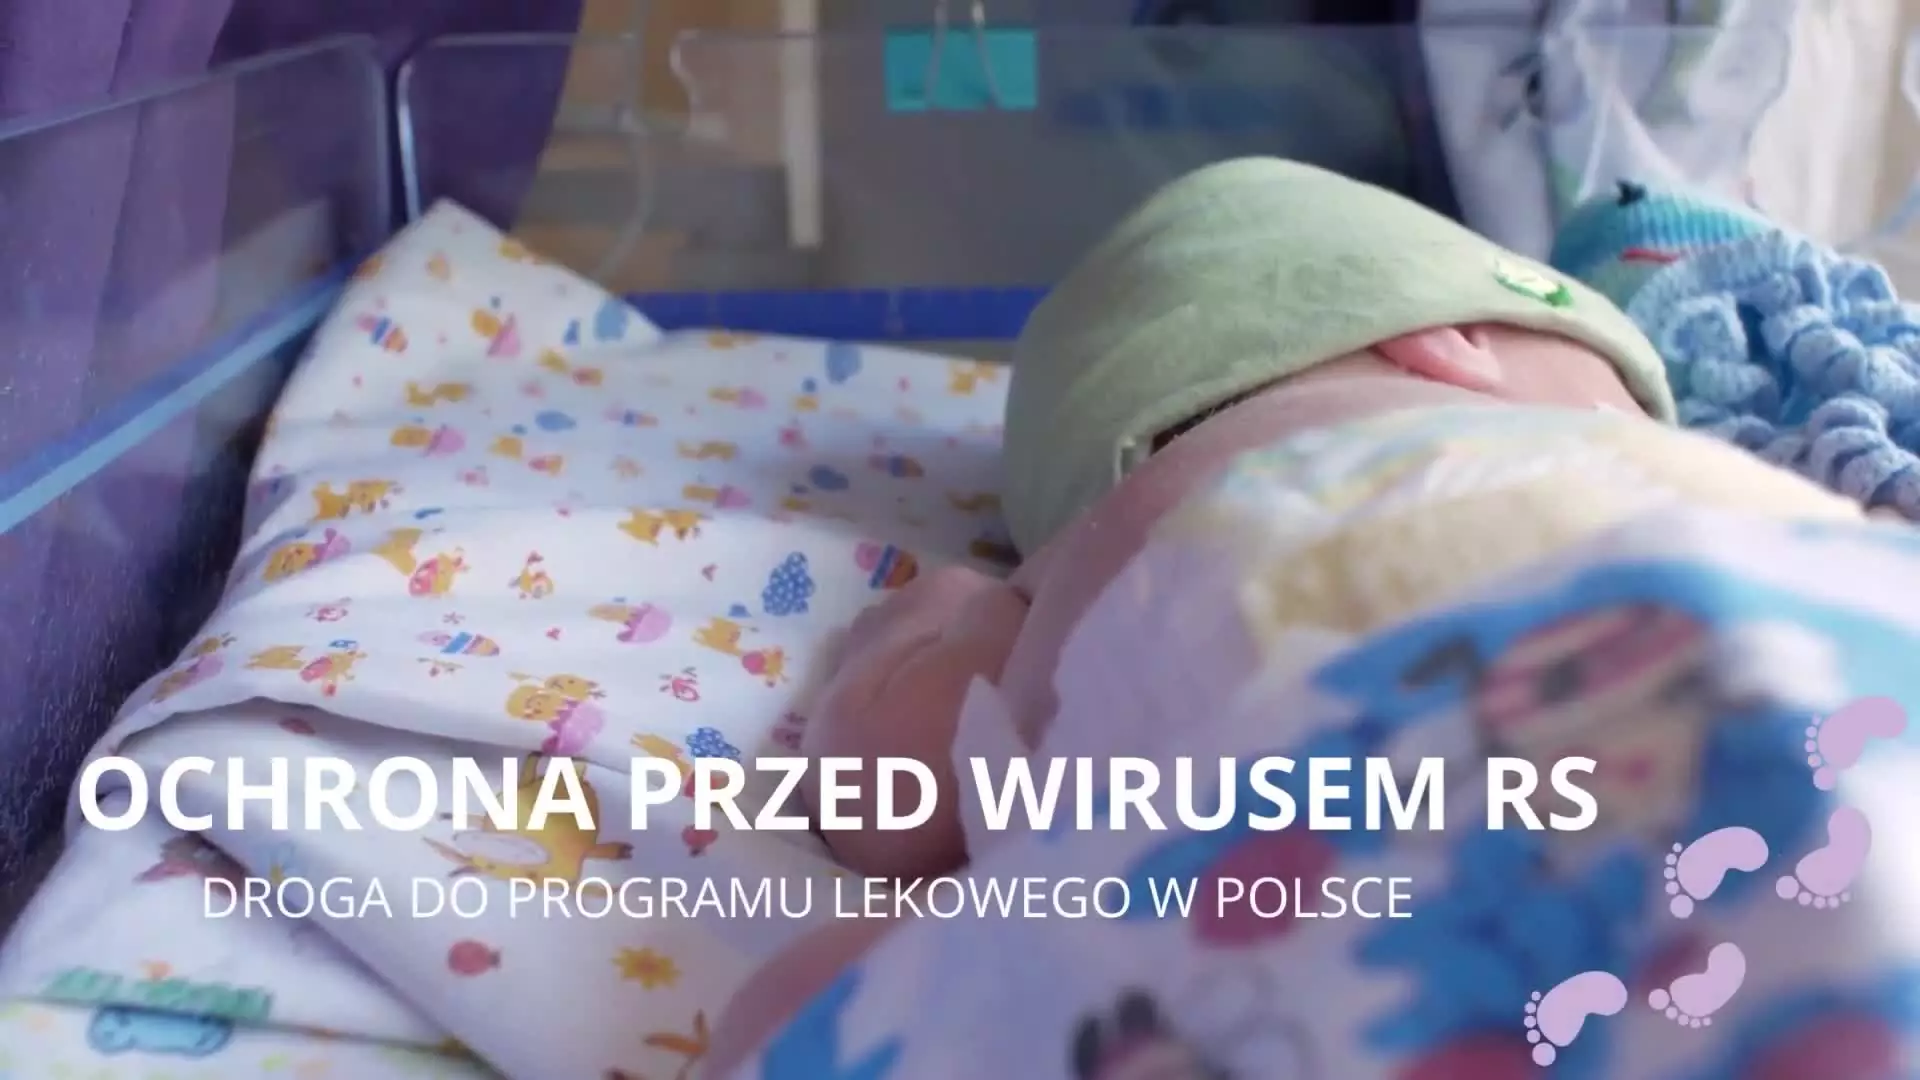 Ochrona przed wirusem RS. Droga do programu lekowego w Polsce